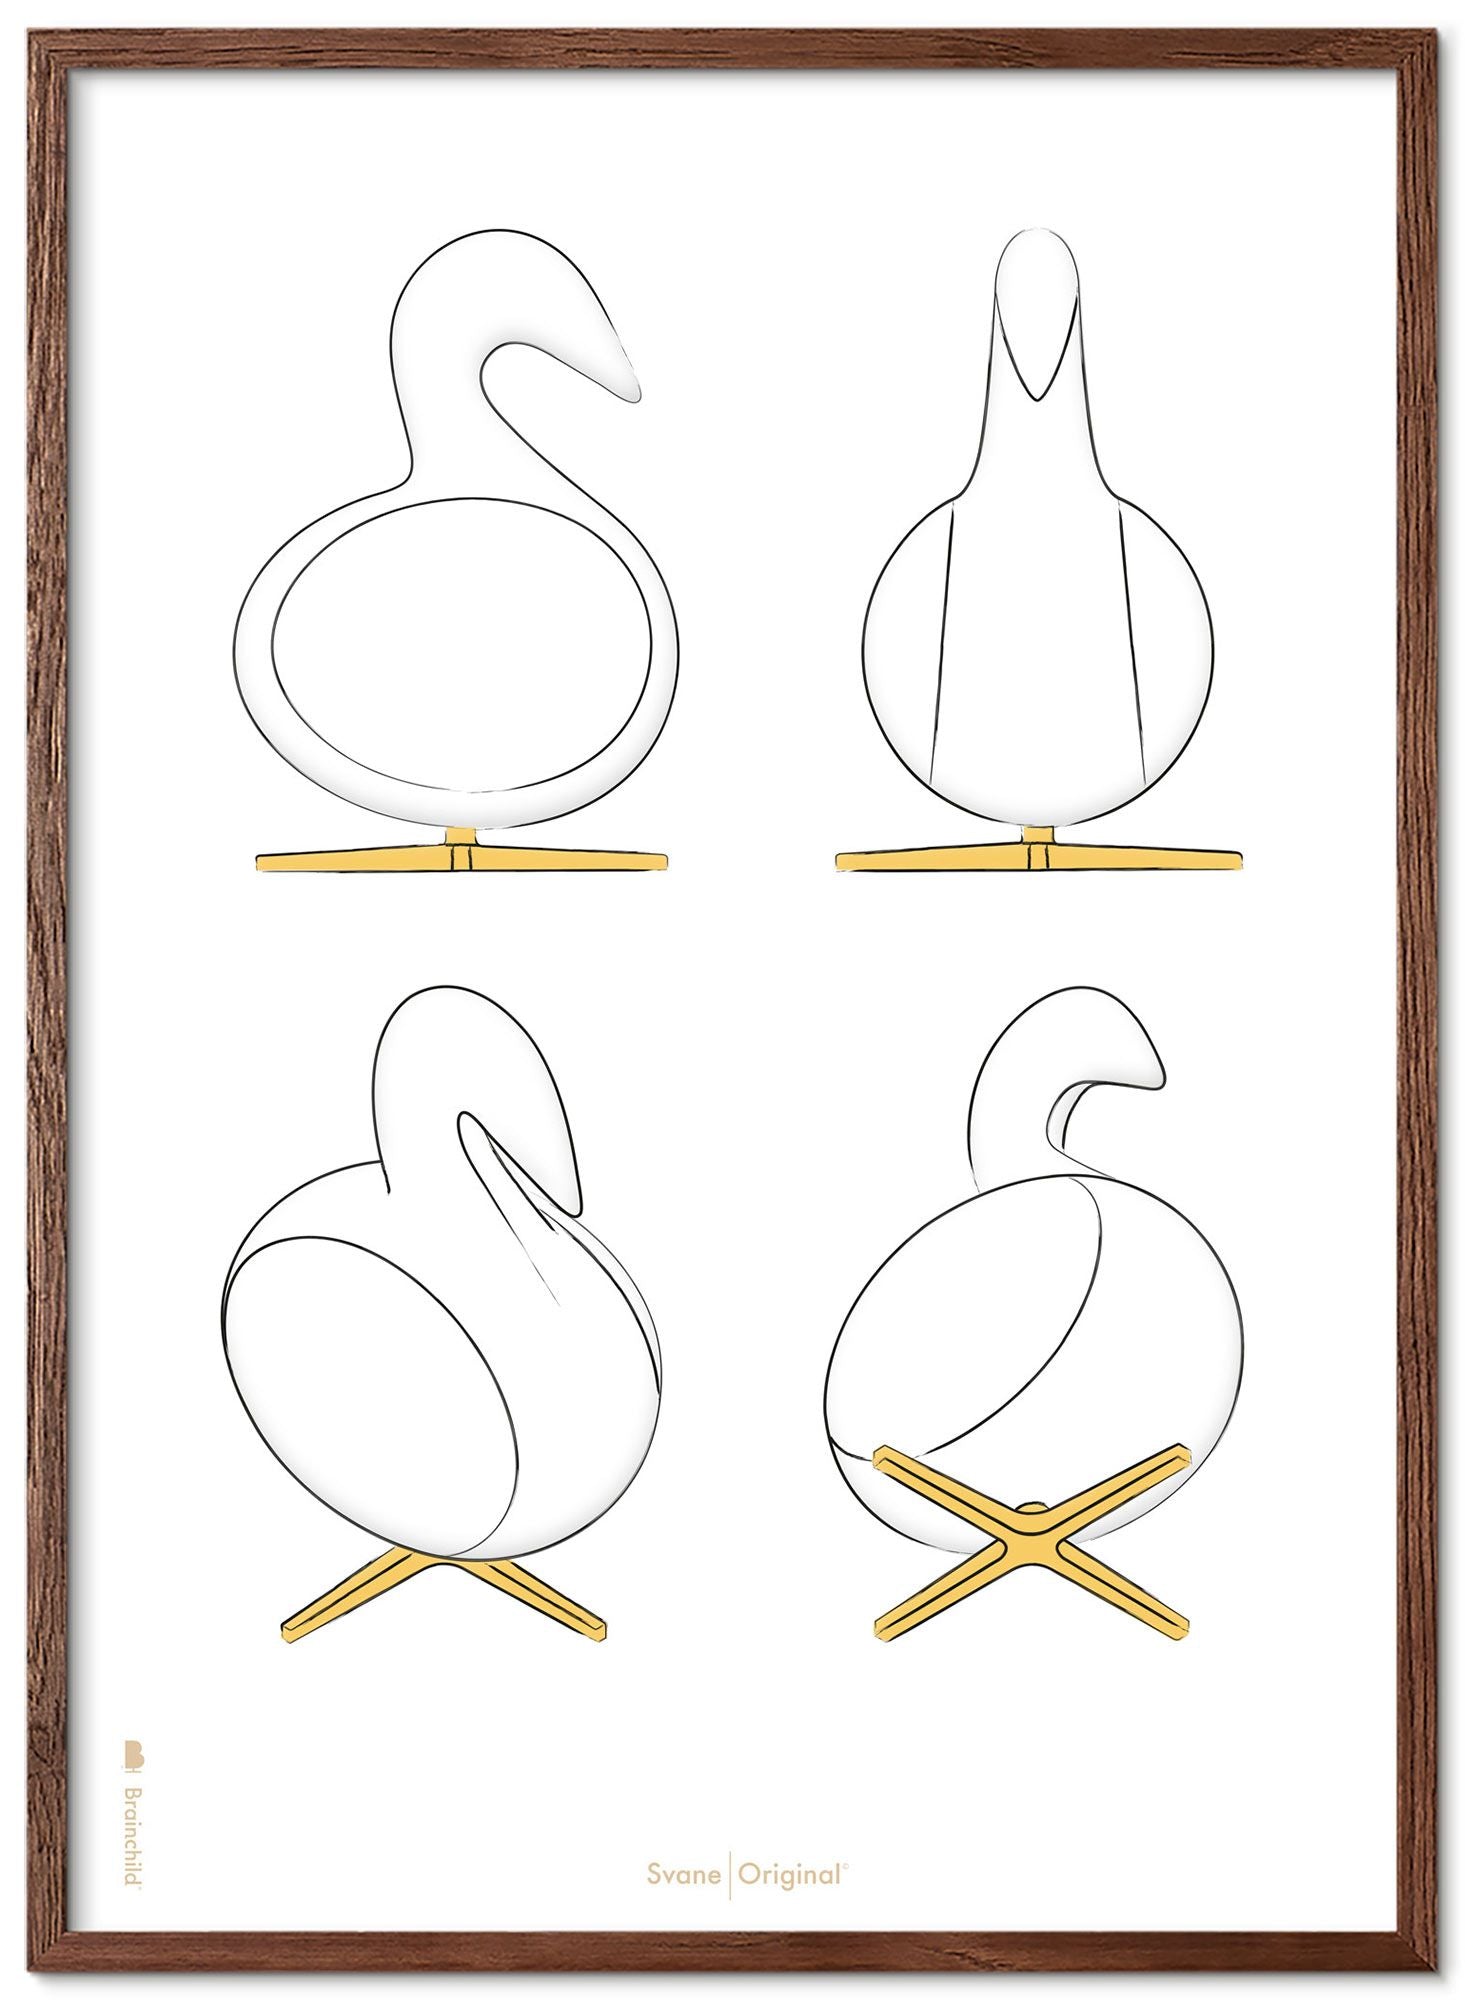 Brainchild Swan Design Sketches Poster Frame lavet af Dark Wood 70x100 cm, hvid baggrund